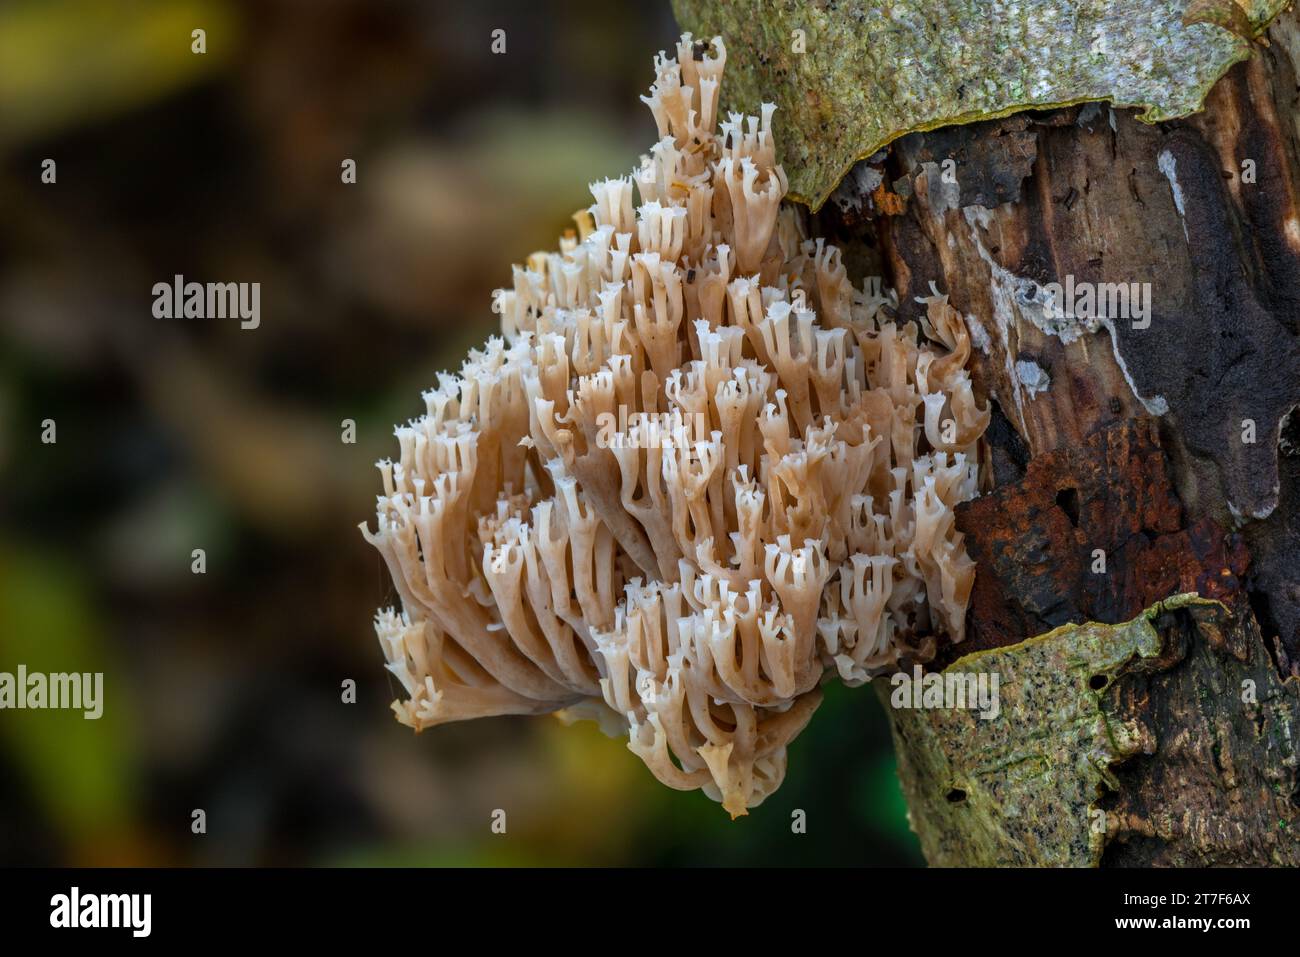 Corail couronne / champignon corallien à pointe de couronne (Artomyces pyxidatus / Clavaria pyxidata) poussant sur du bois en décomposition dans la forêt en automne / automne Banque D'Images